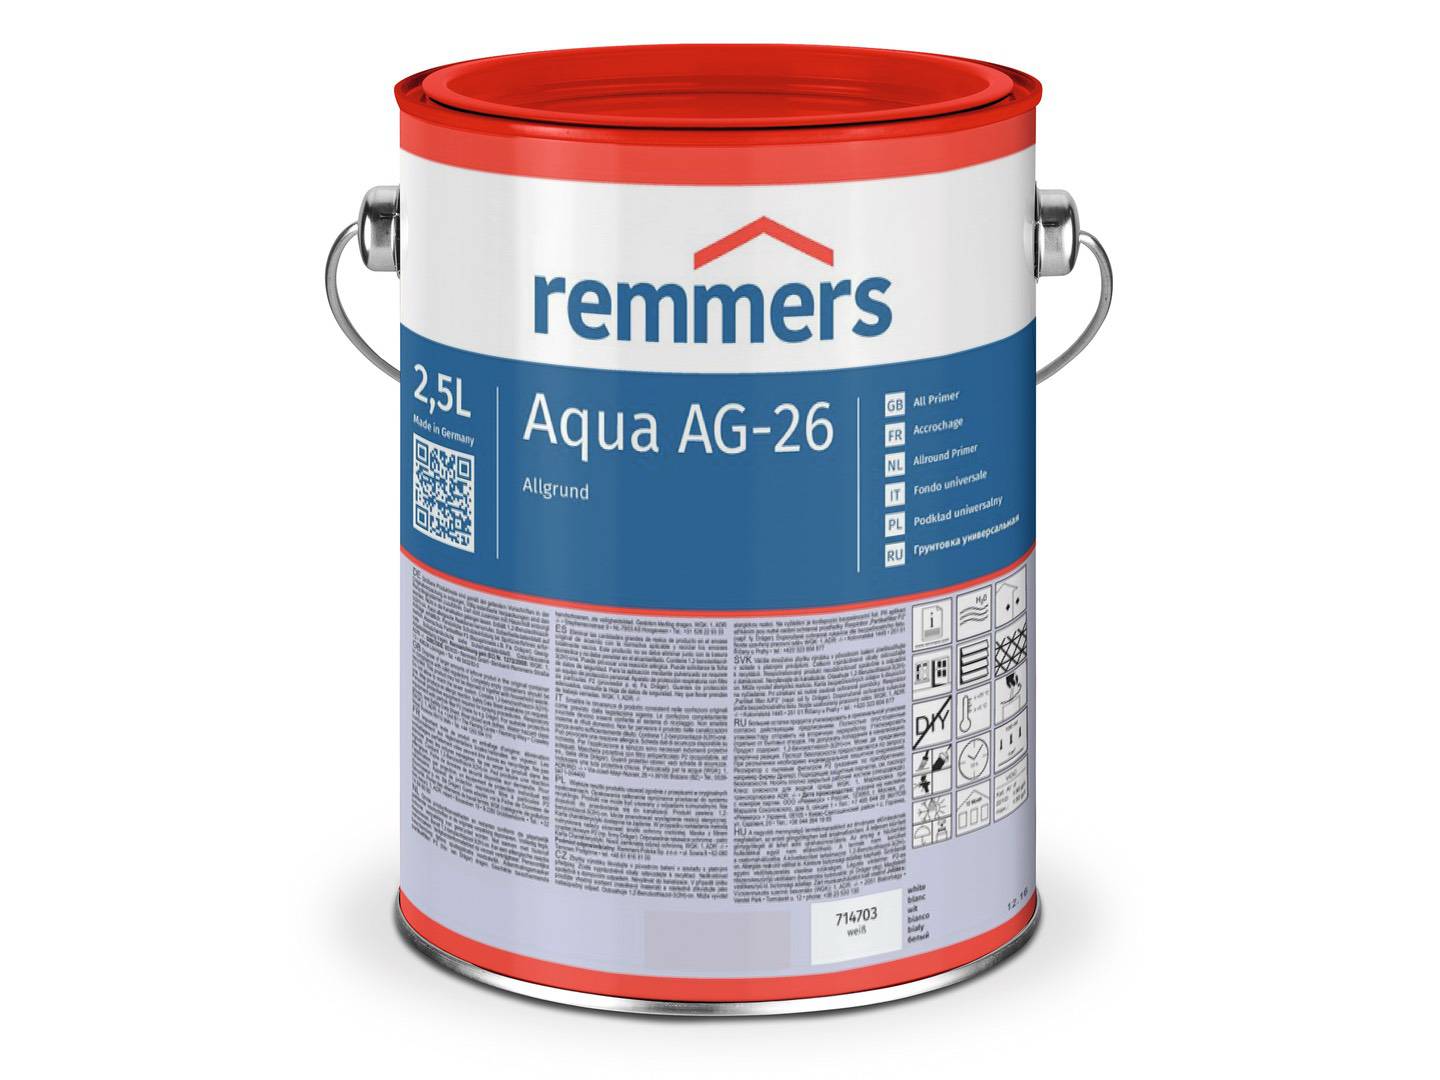 REMMERS Aqua AG-26-Allgrund weiß 5 l